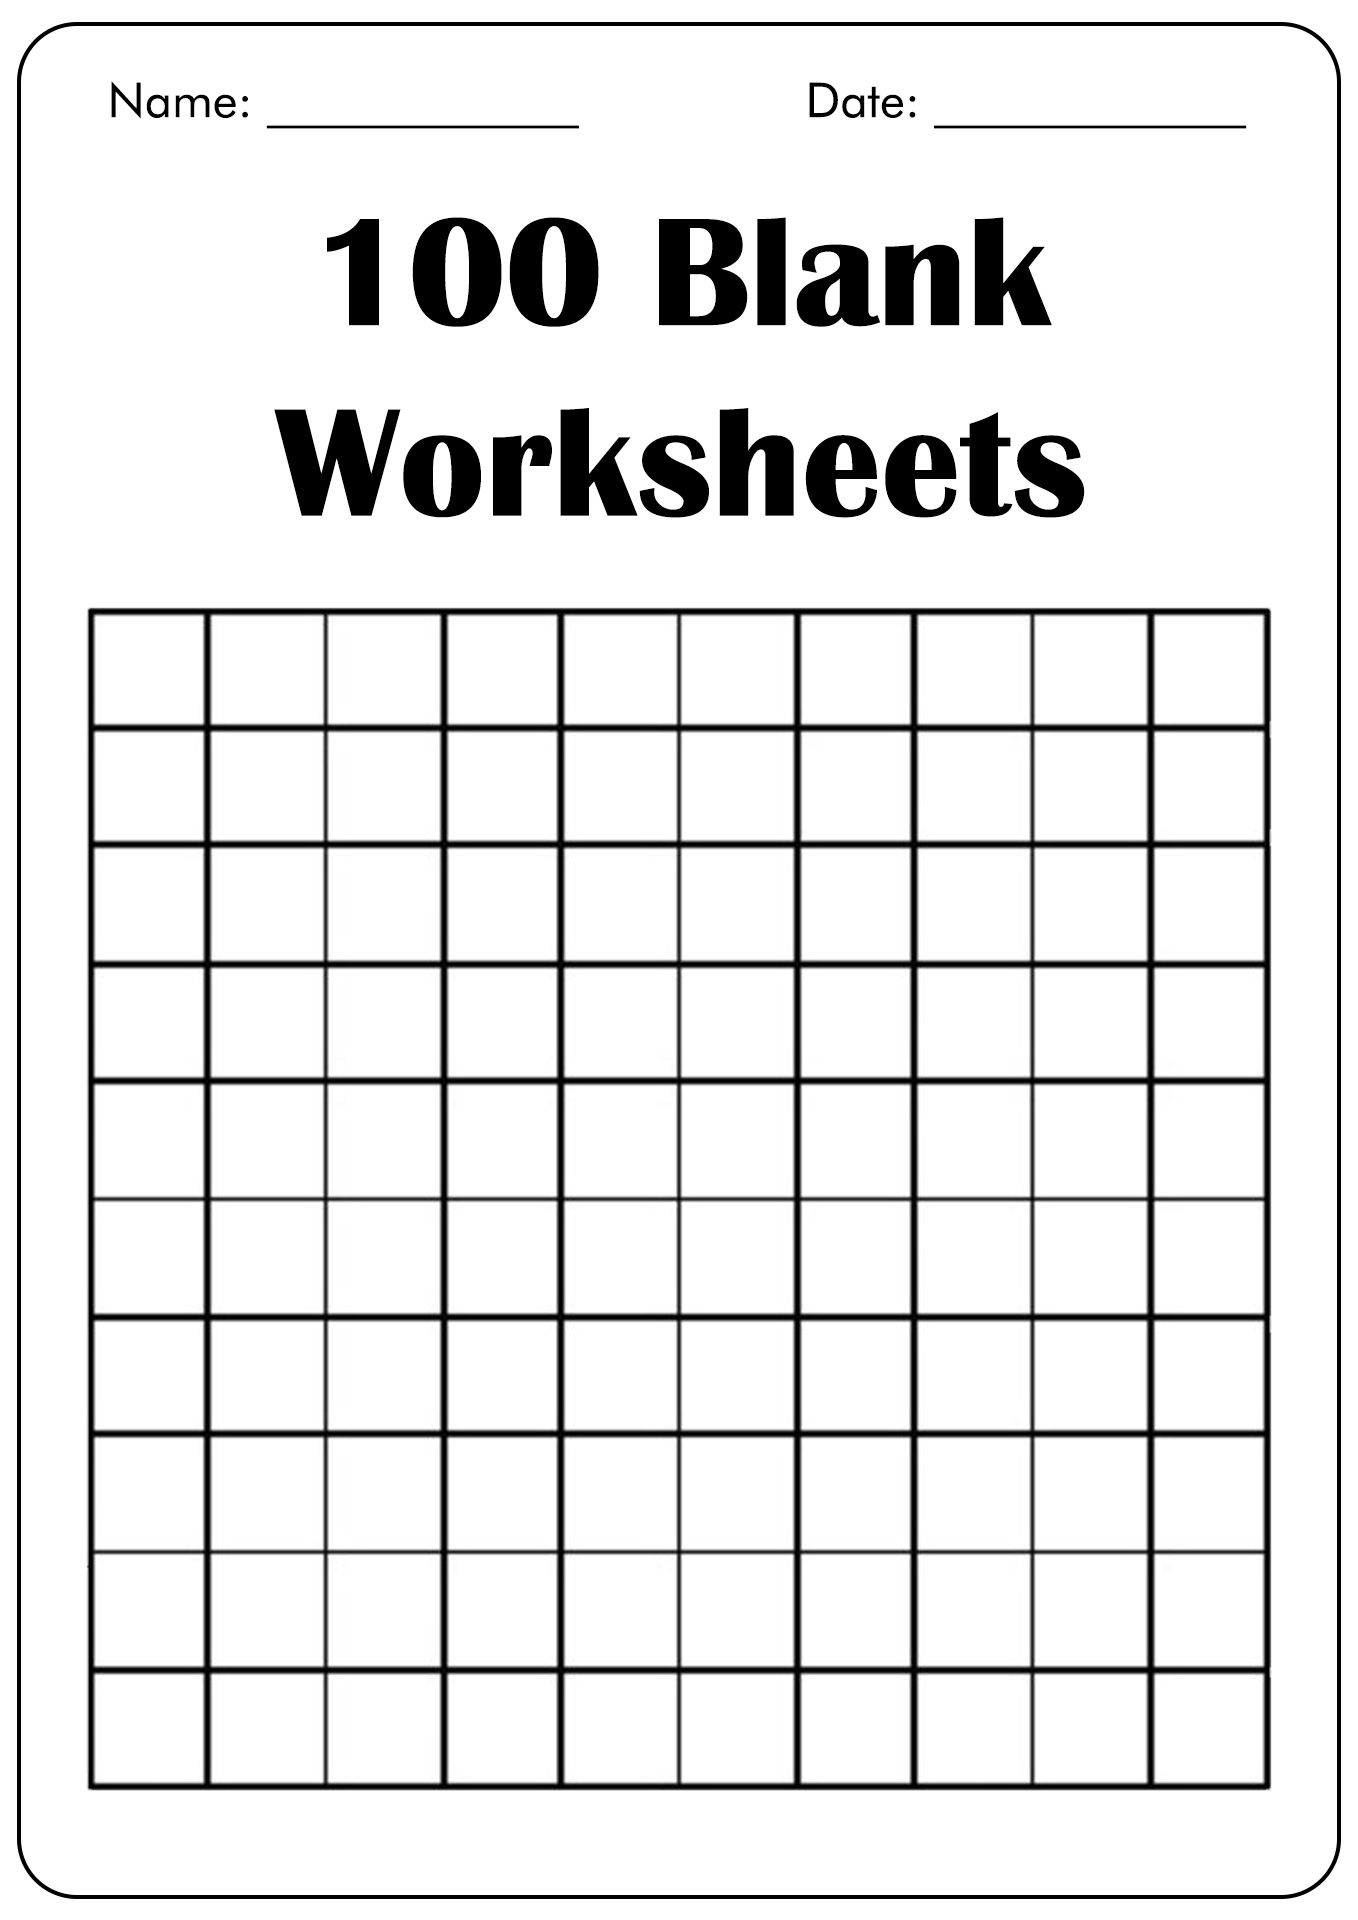 100 Blank Worksheet